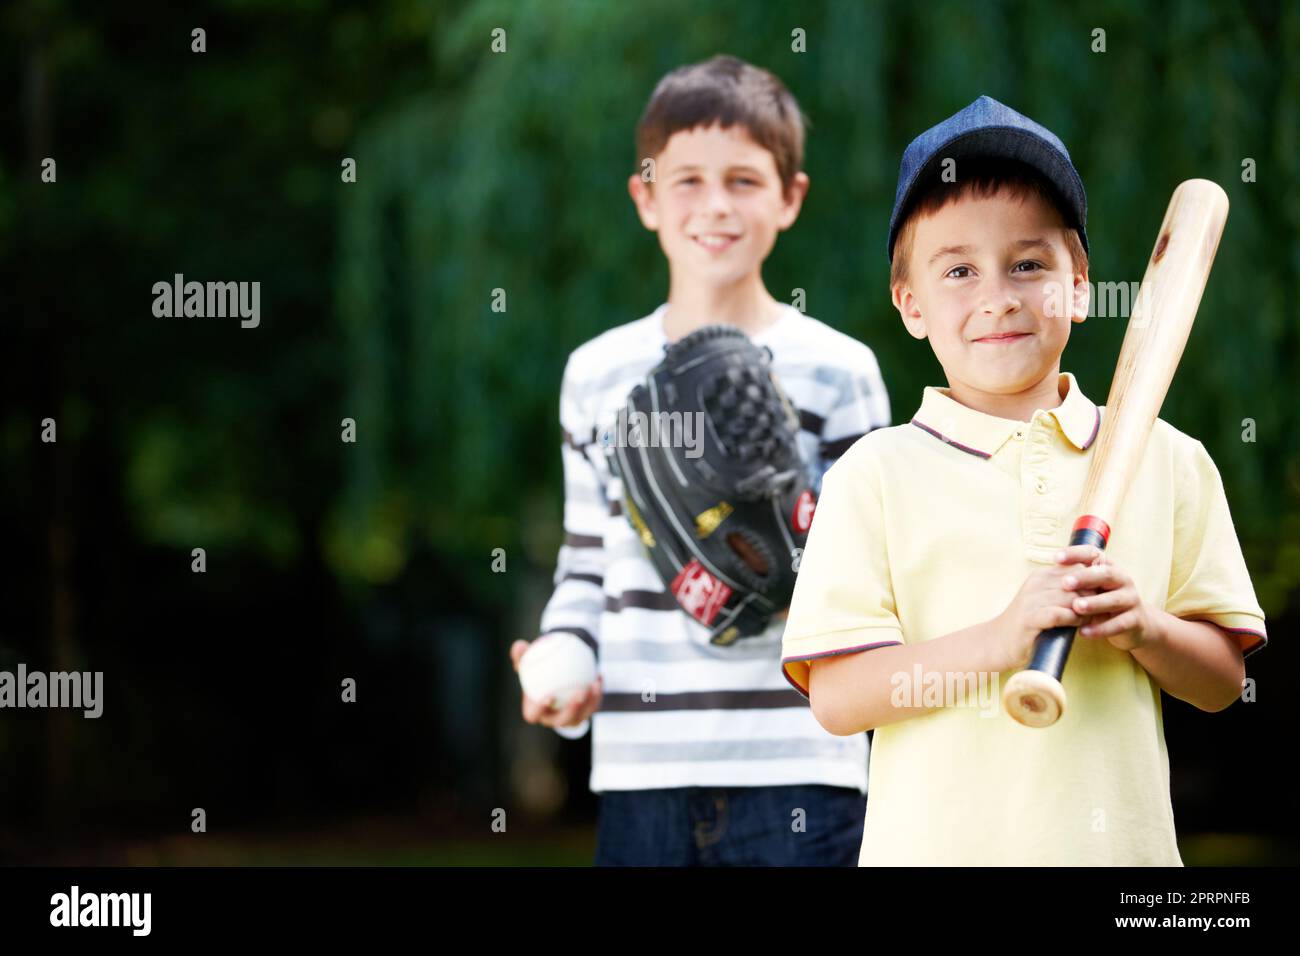 Ich werde einen Heimlauf machen. Zwei junge Jungs lächeln glücklich nach einem energiegeladenen Baseballspiel im Park - Copyspace. Stockfoto